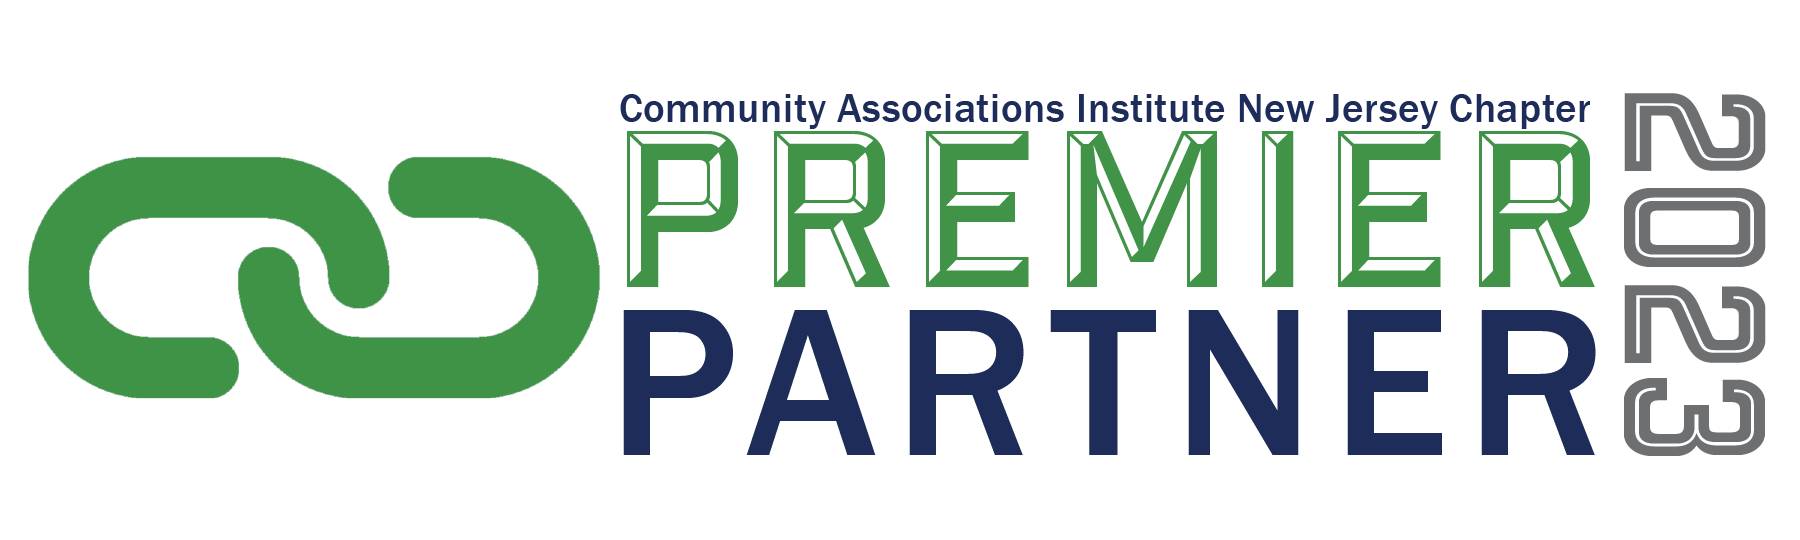 2023 Partner Premier Logo - transparent